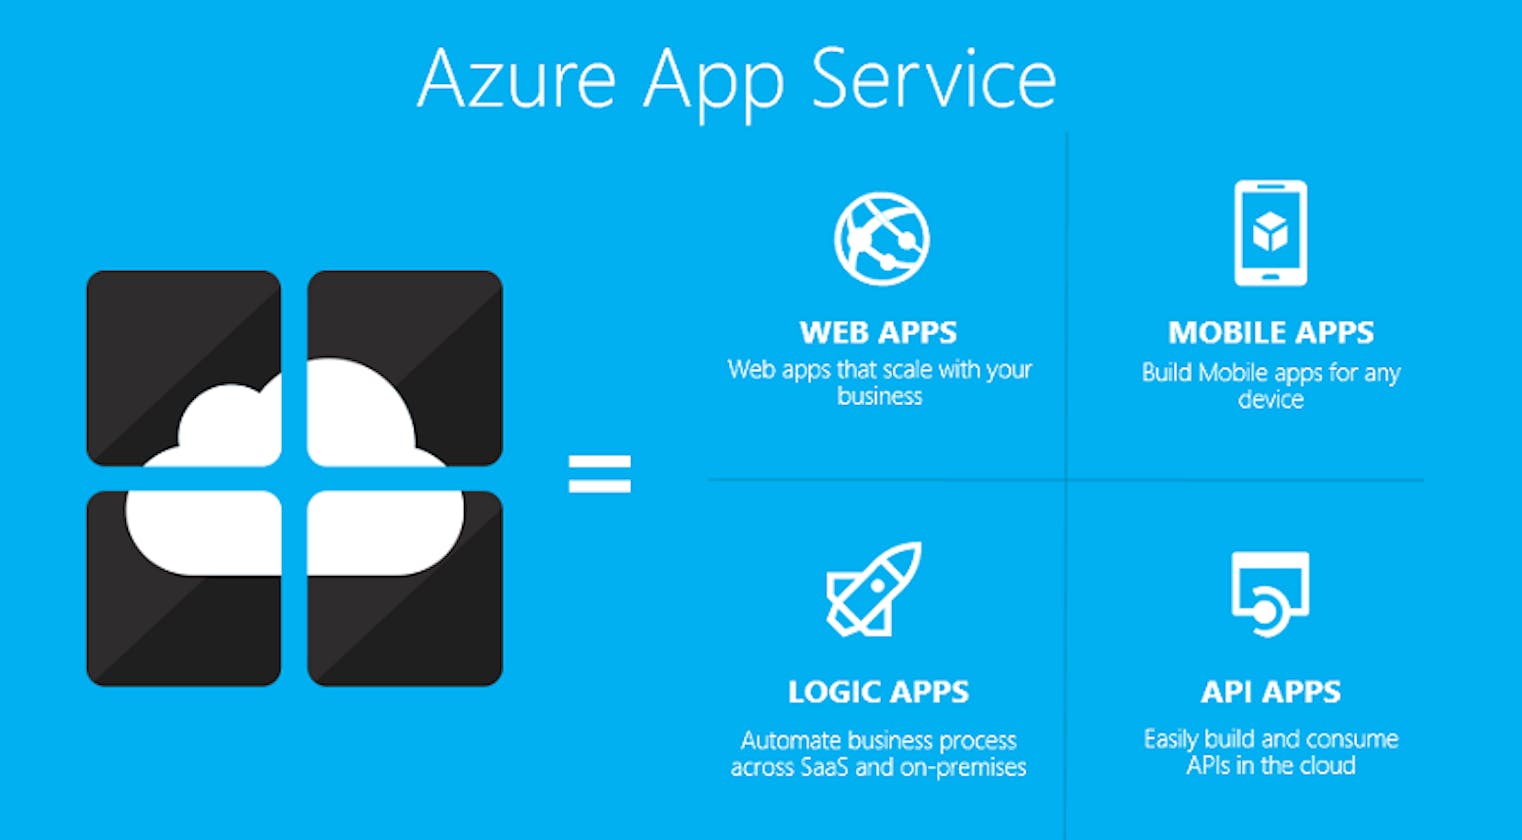 Azure App Service: A Managed Platform for Web, Mobile, and API Apps